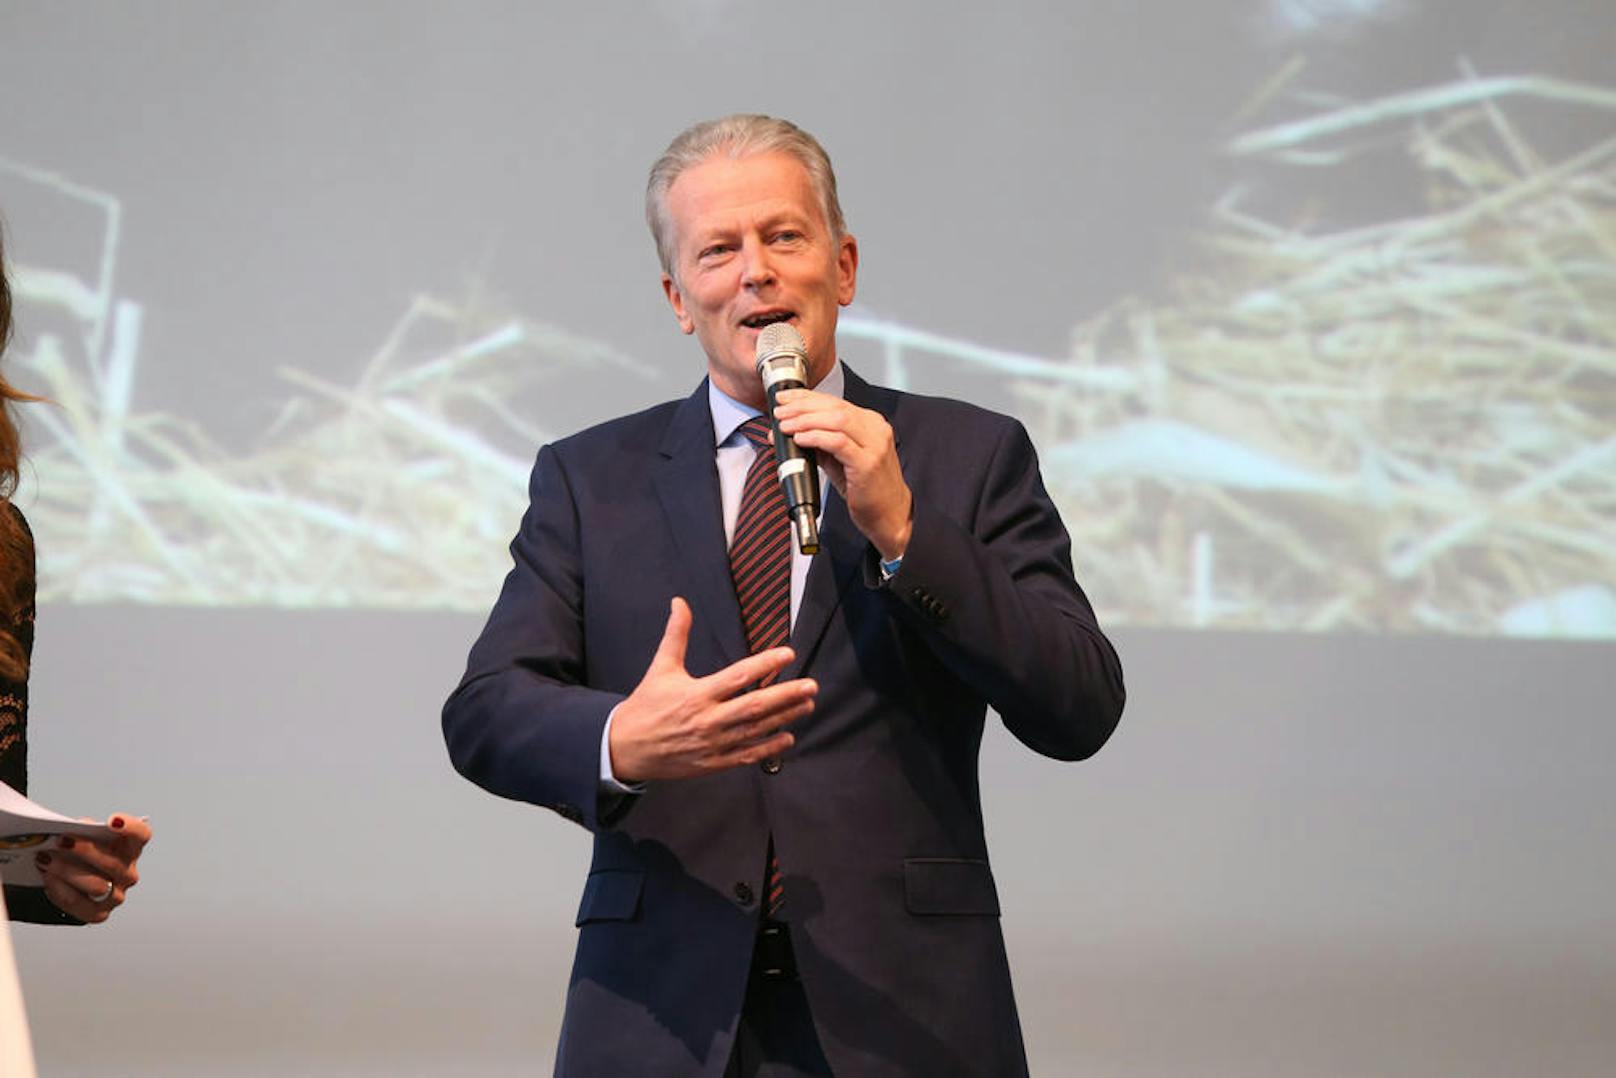 Sein Verbindungsspitznamen "Django" wurde im Rahmen seiner Wahl zum Bundesparteiobmann der ÖVP im August 2014 österreichweit bekannt.